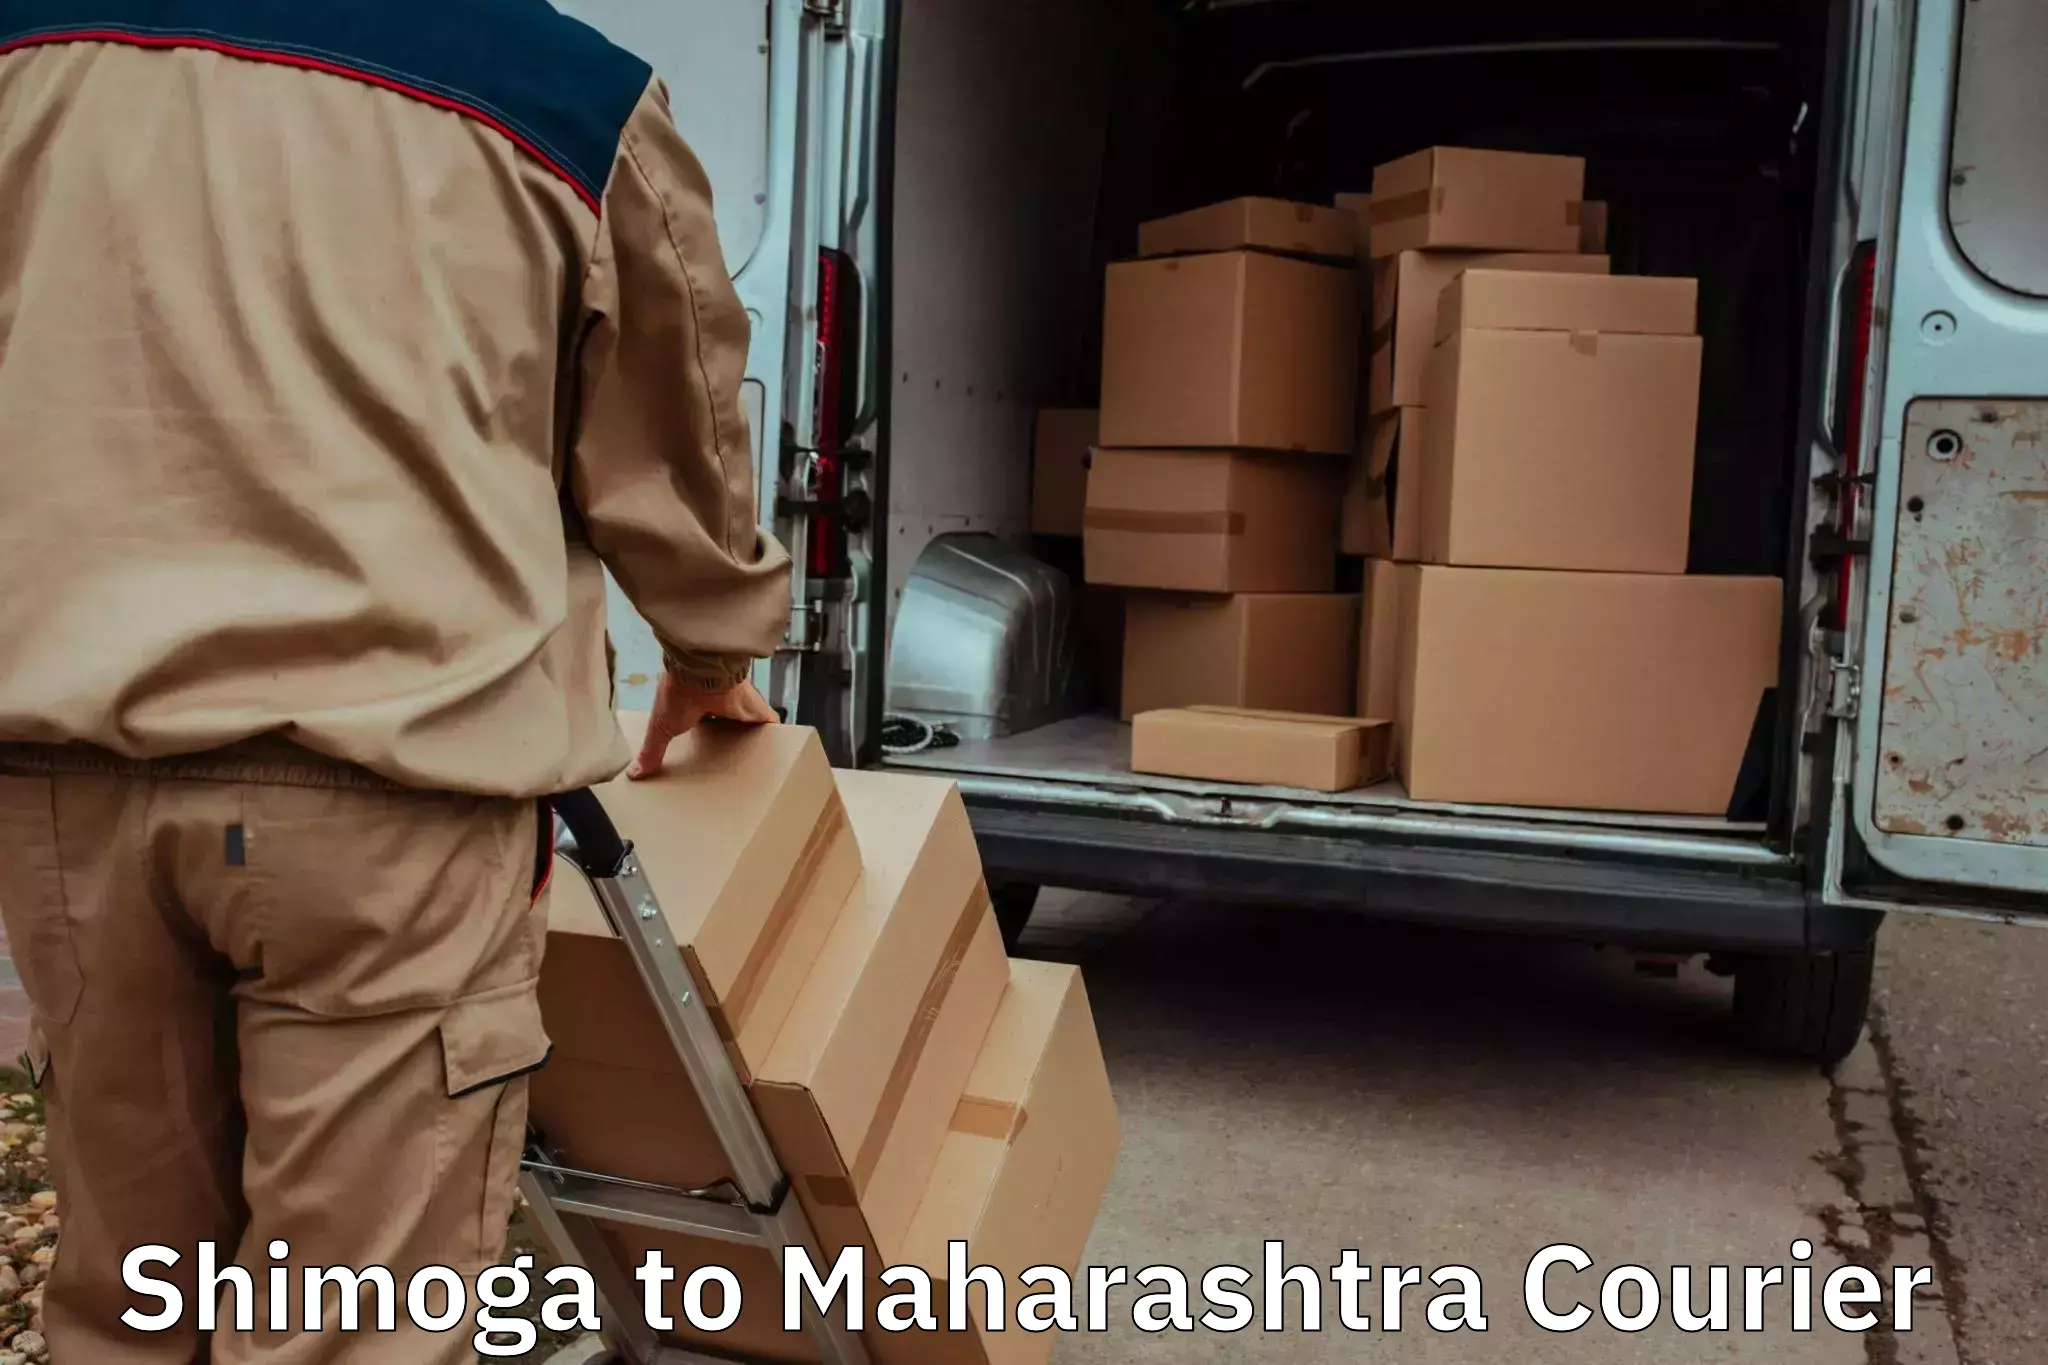 Trusted moving company Shimoga to Mahabaleshwar